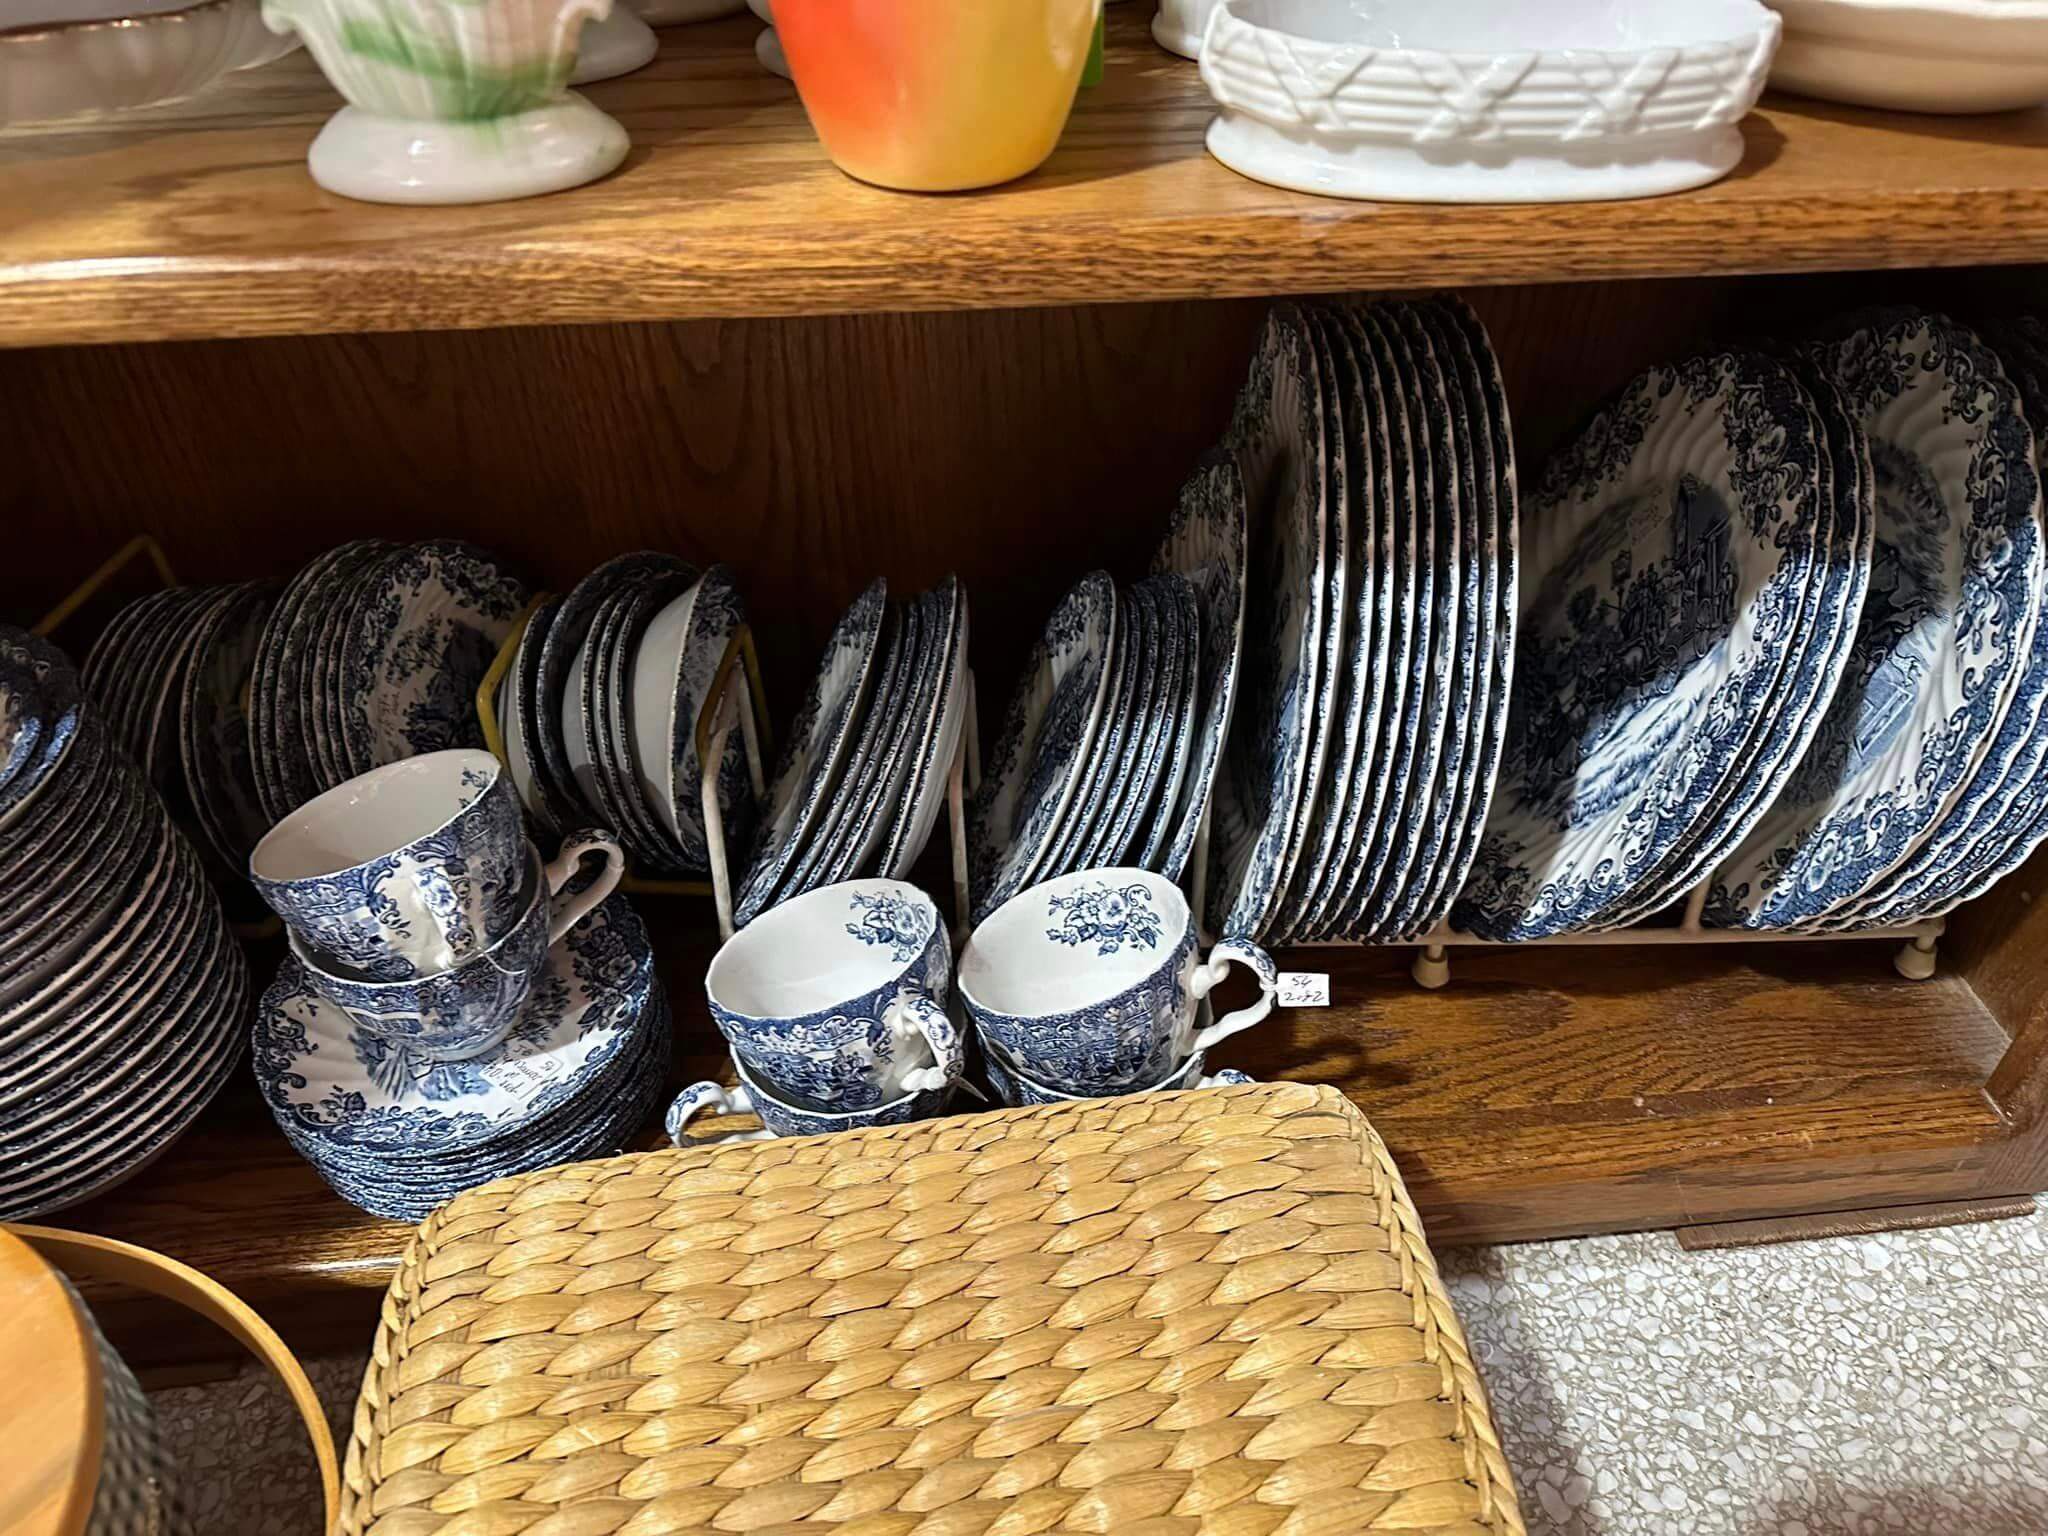 Plates on a shelf. 